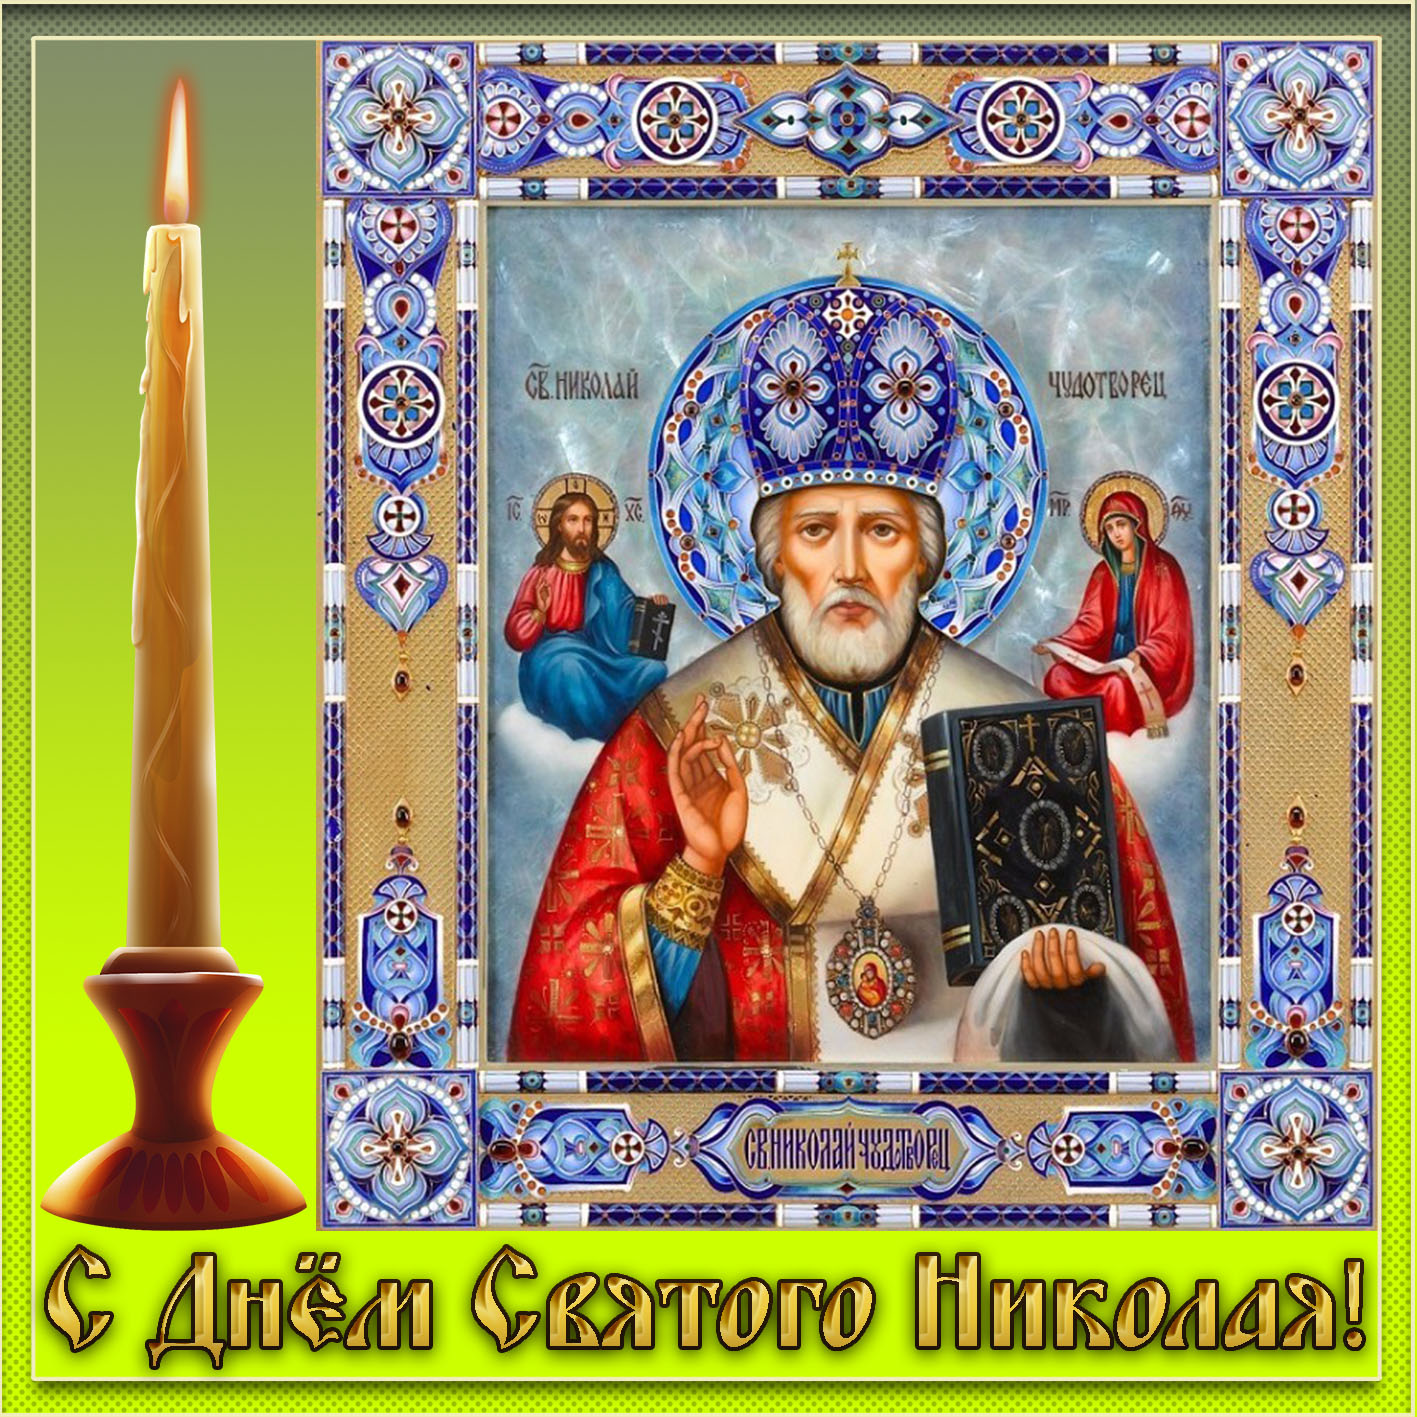 Картинка с иконой Святого Николая